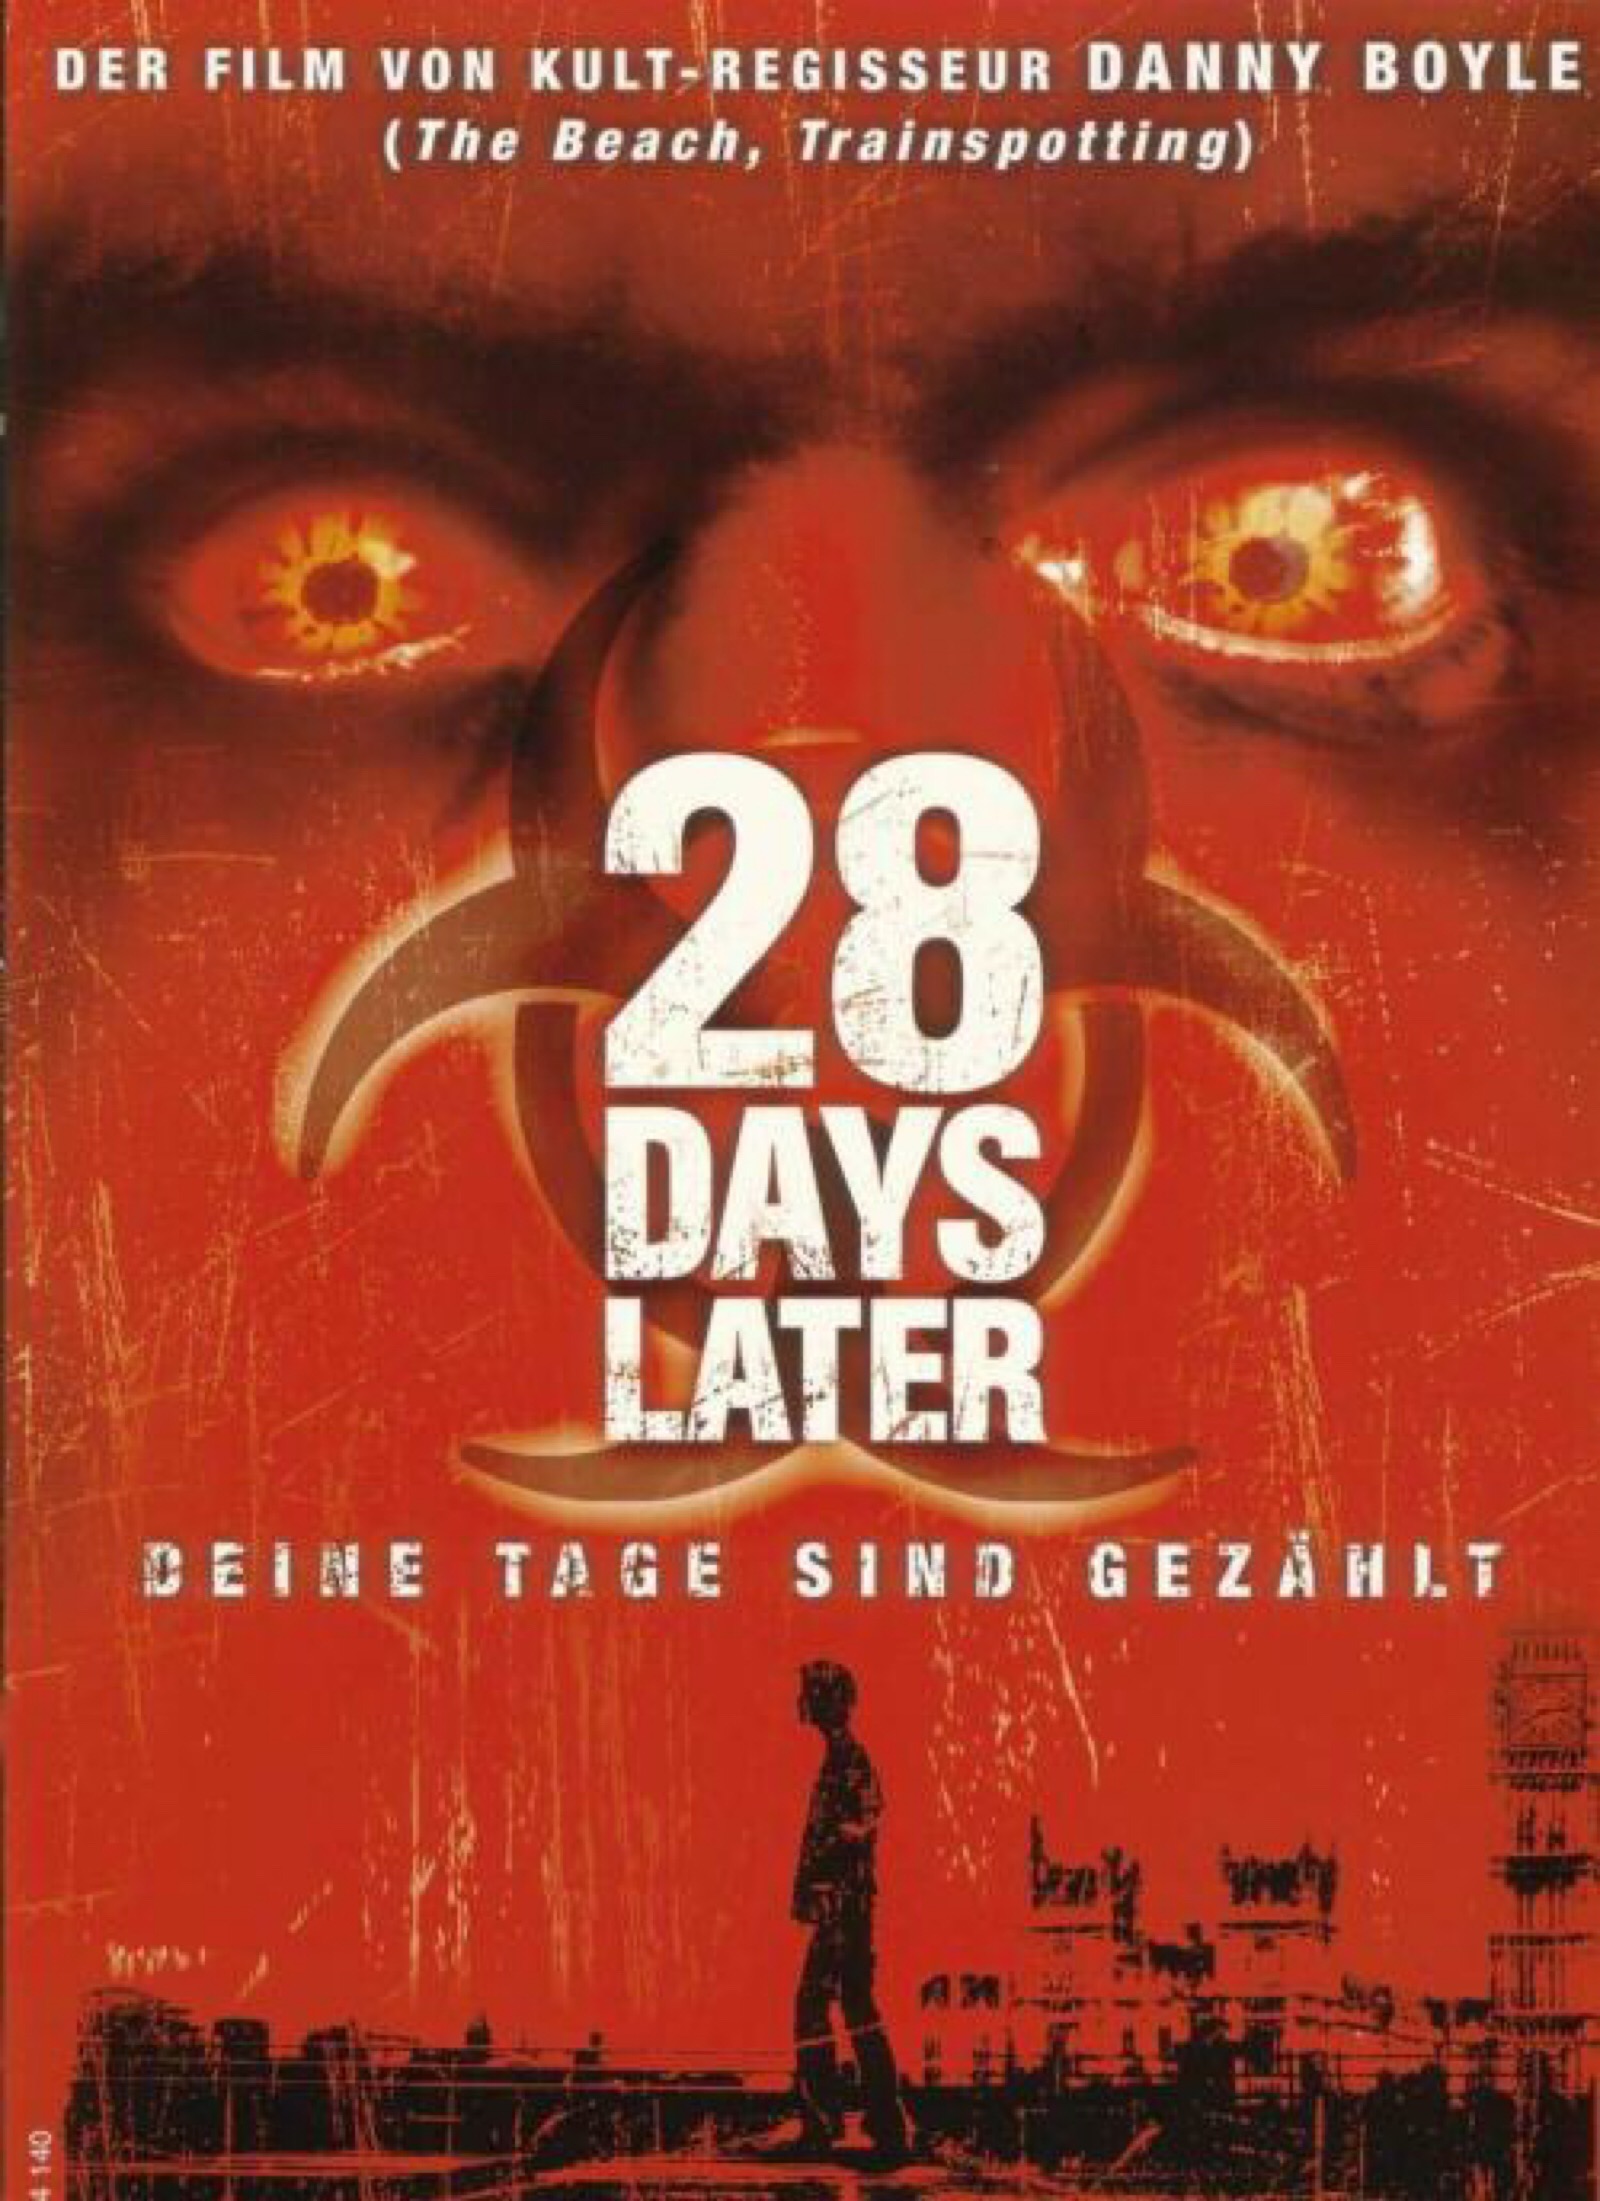 影片《惊变28天》由丹尼·鲍尔执导, 亚力克斯·嘉兰编辑,希里安